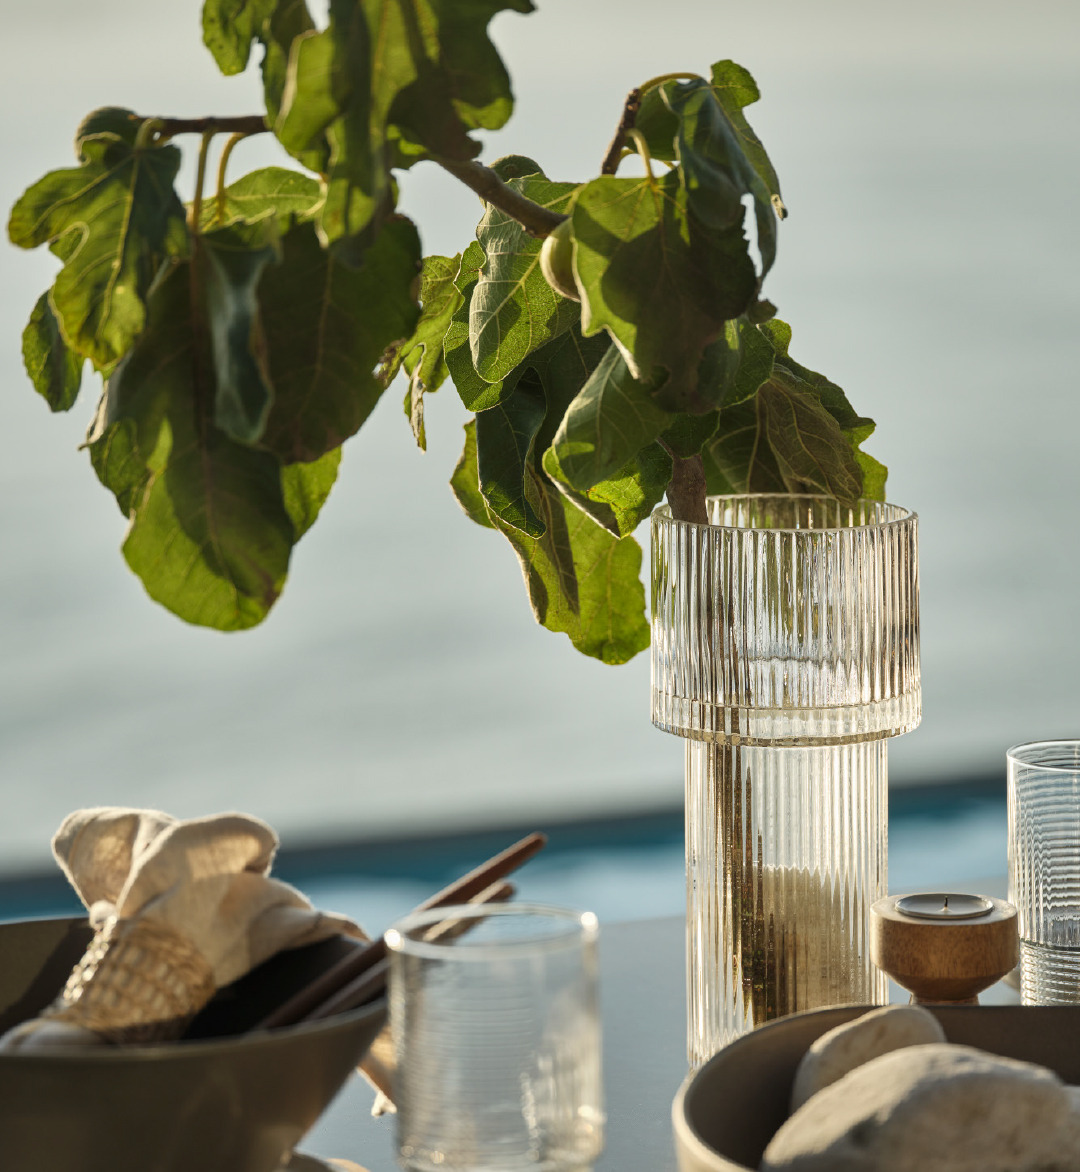 Vaso con piante sul tavolo circondato da molti accessori decorativi